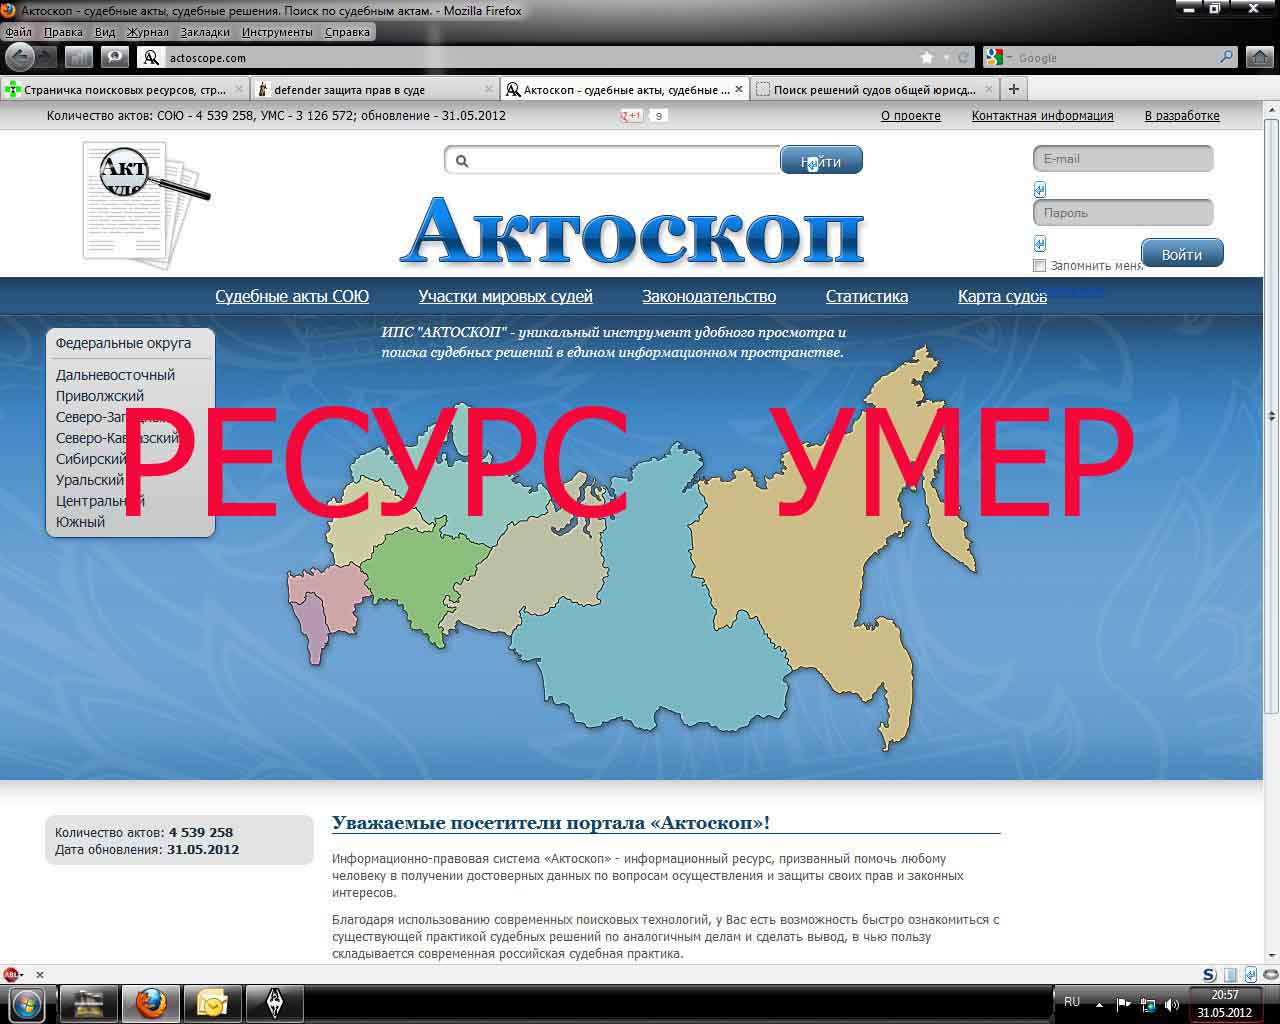 Информационно-правовая система "Актоскоп", ИПС "Актоскоп" - actoscope.com